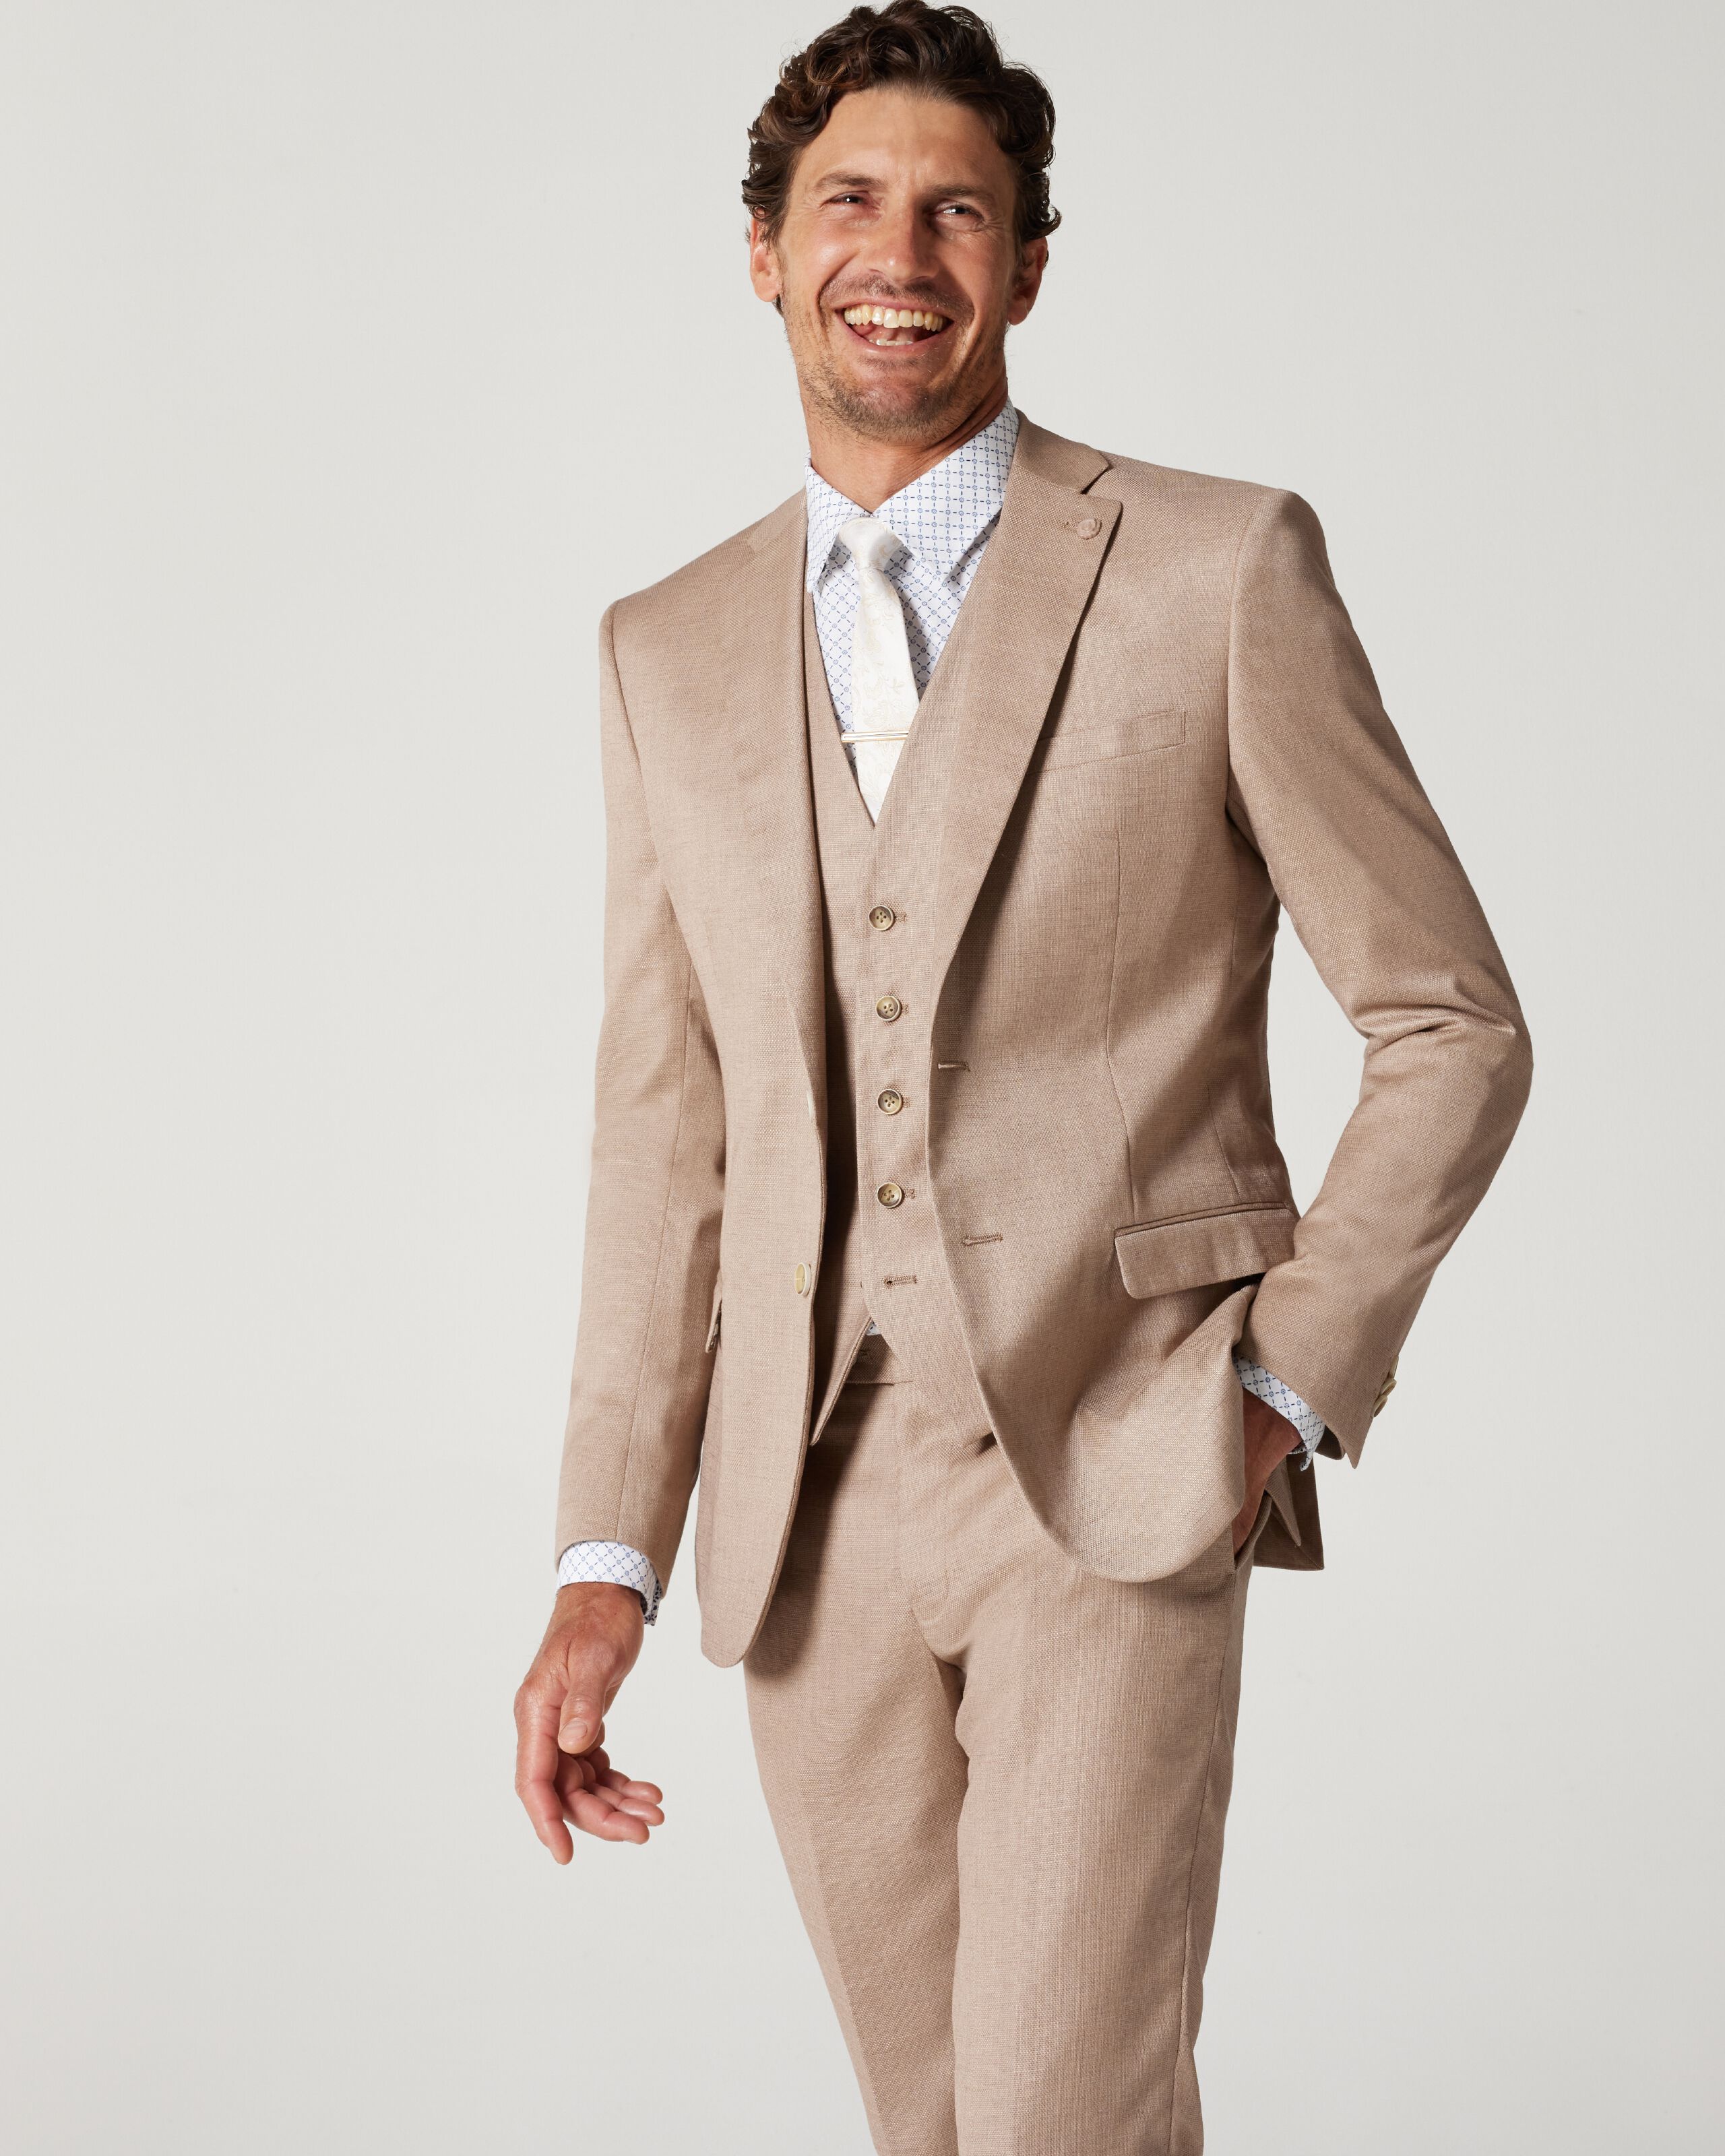 Men's Premium Coffee Brown 3 Piece Slim Fit Suit Wedding Party Suit fo–  SAINLY